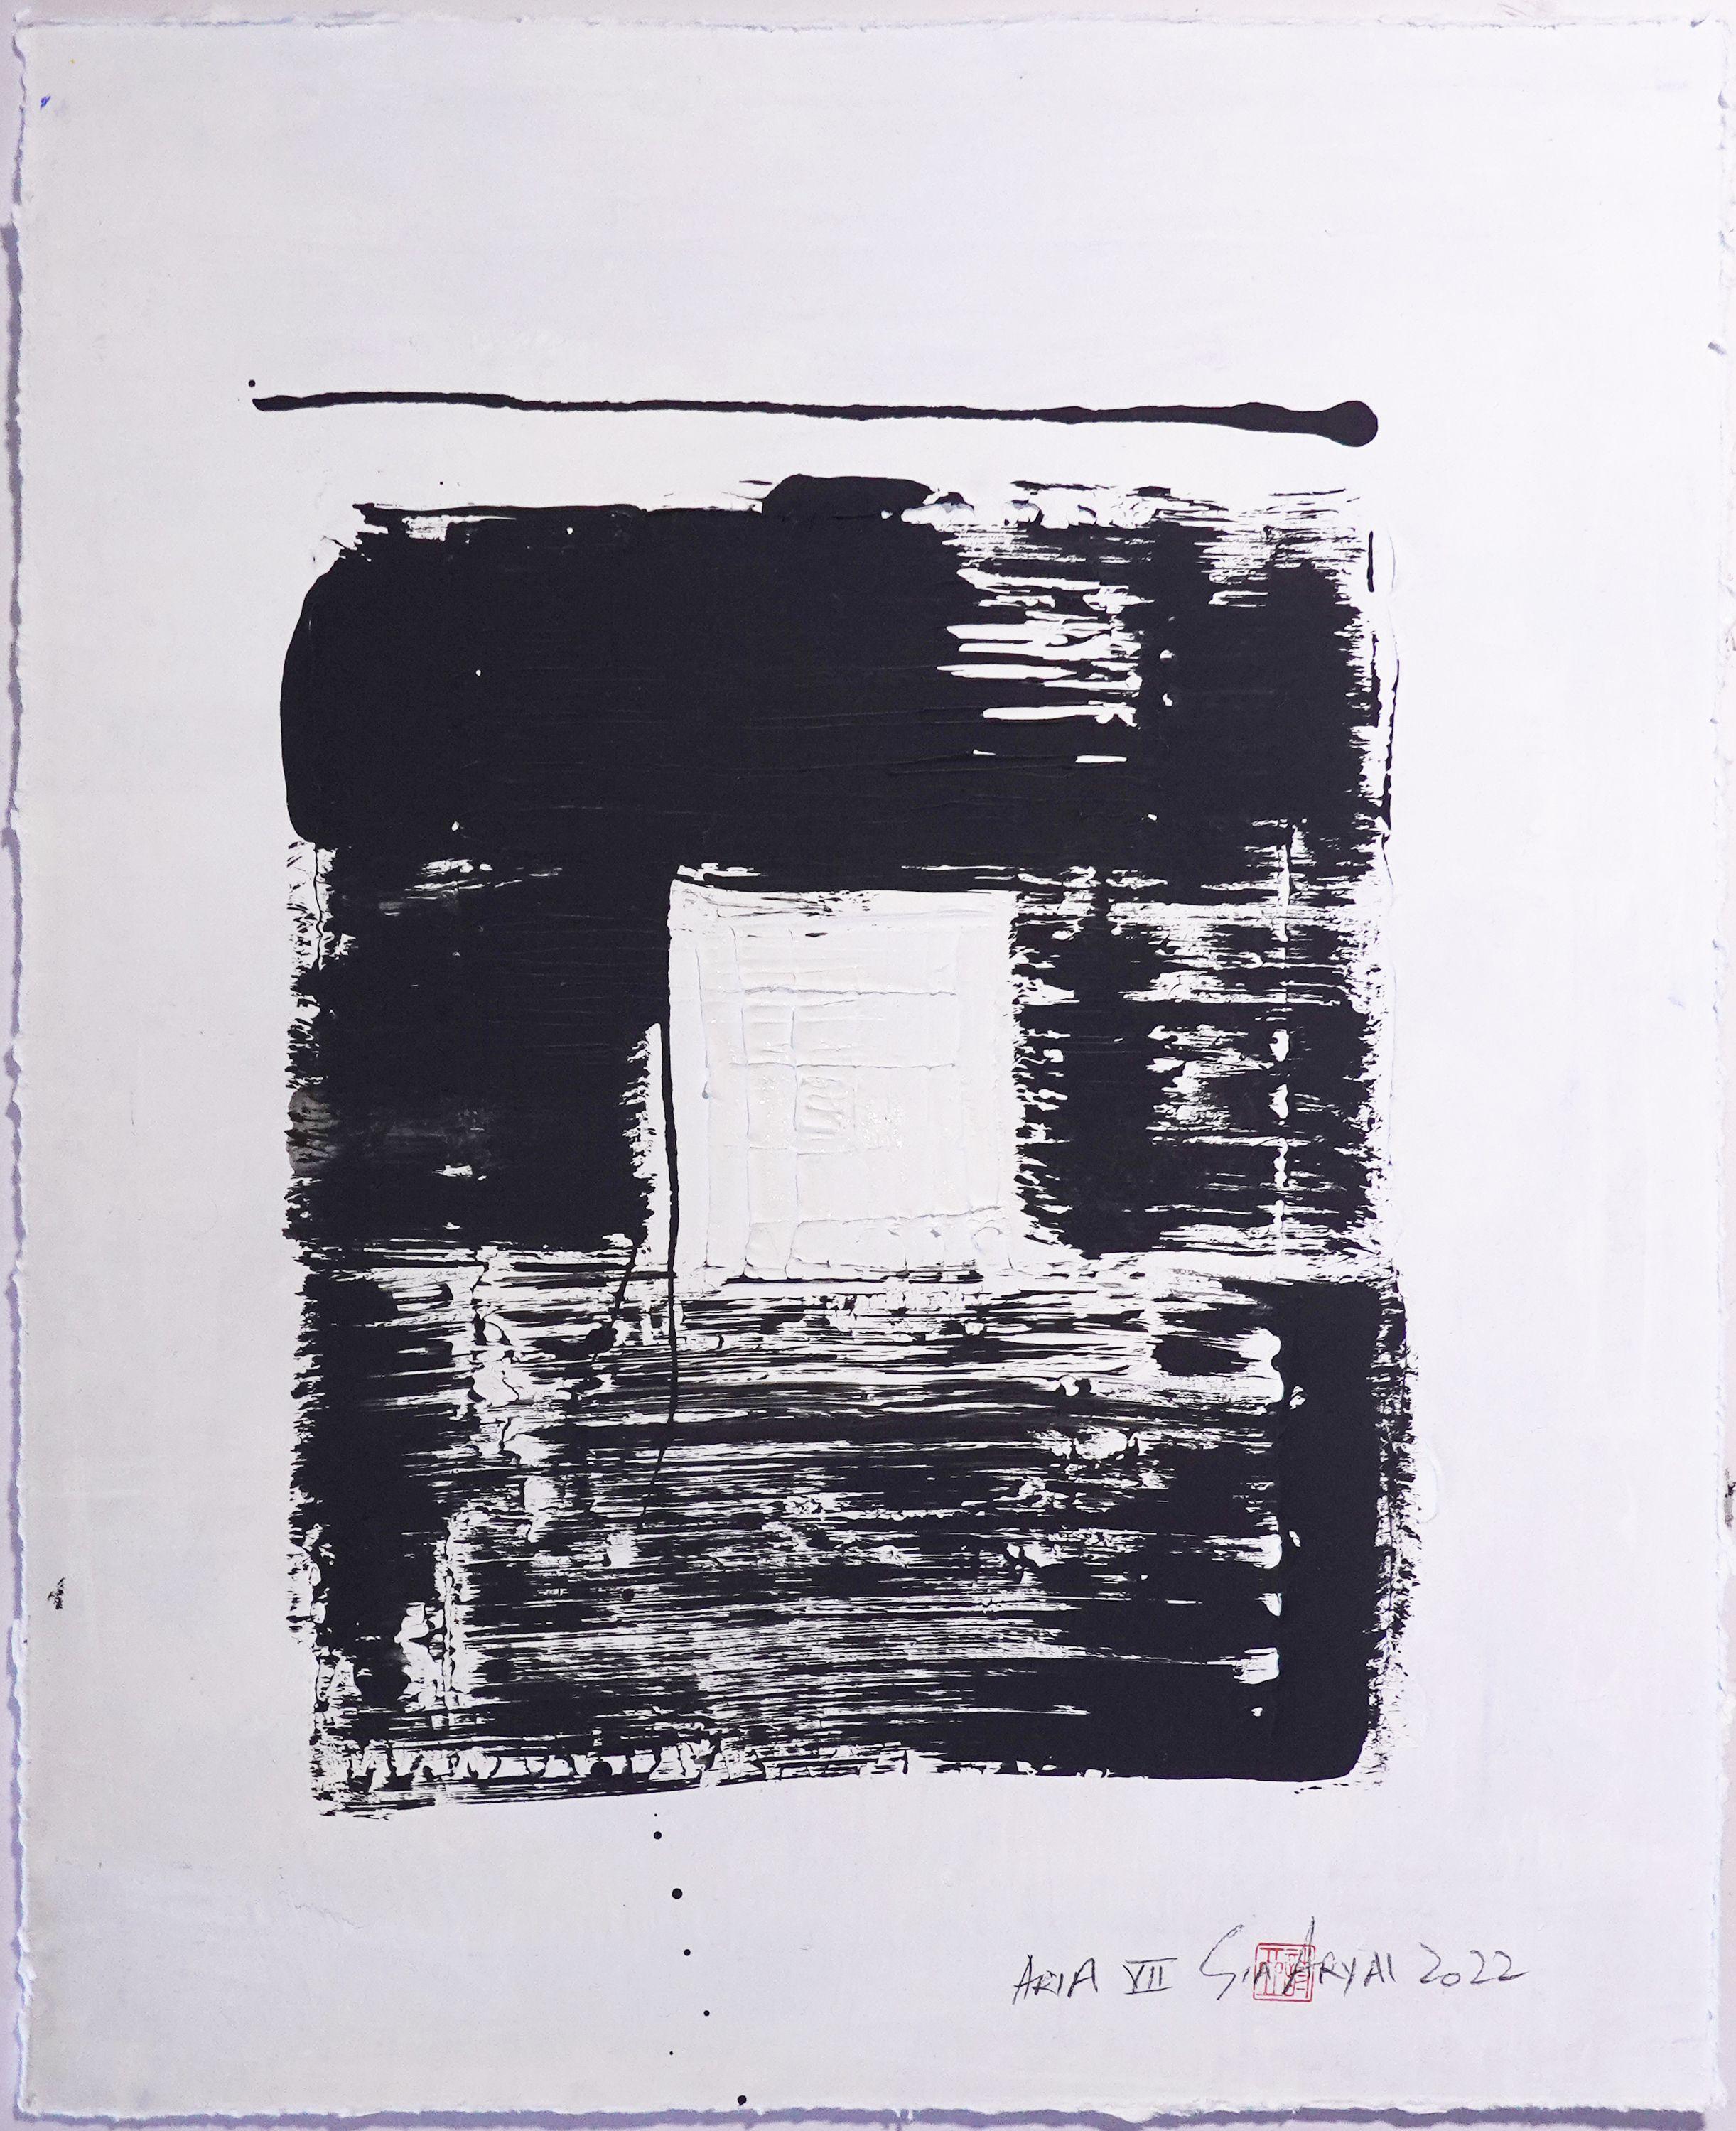 ARIA. VII  Peinture abstraite encadre en noir et blanc, peinture, acrylique sur papier - Painting de Sia Aryai